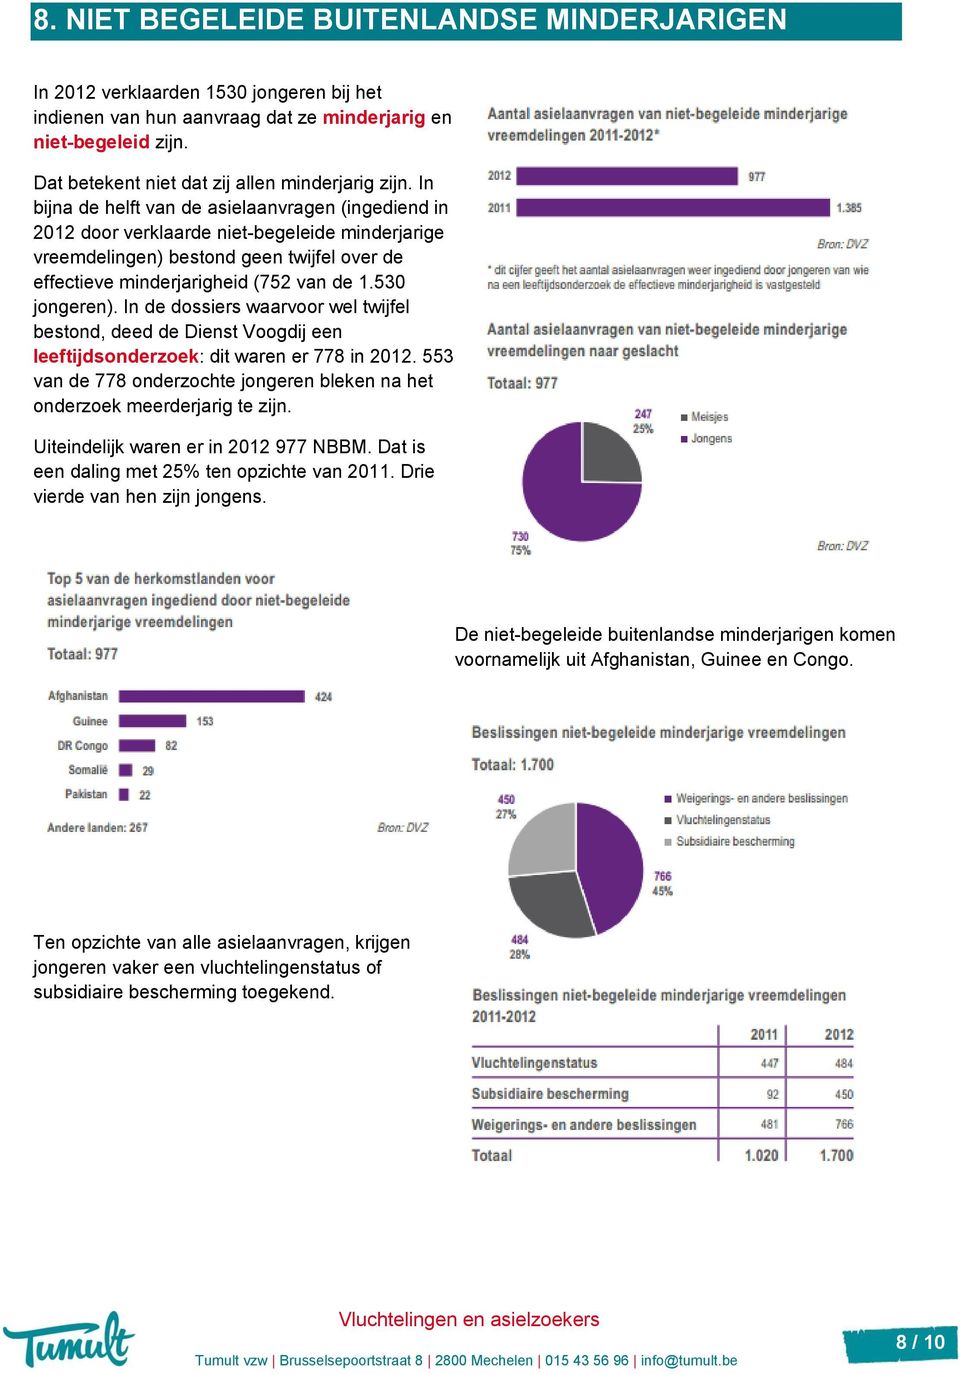 In bijna de helft van de asielaanvragen (ingediend in 2012 door verklaarde niet-begeleide minderjarige vreemdelingen) bestond geen twijfel over de effectieve minderjarigheid (752 van de 1.